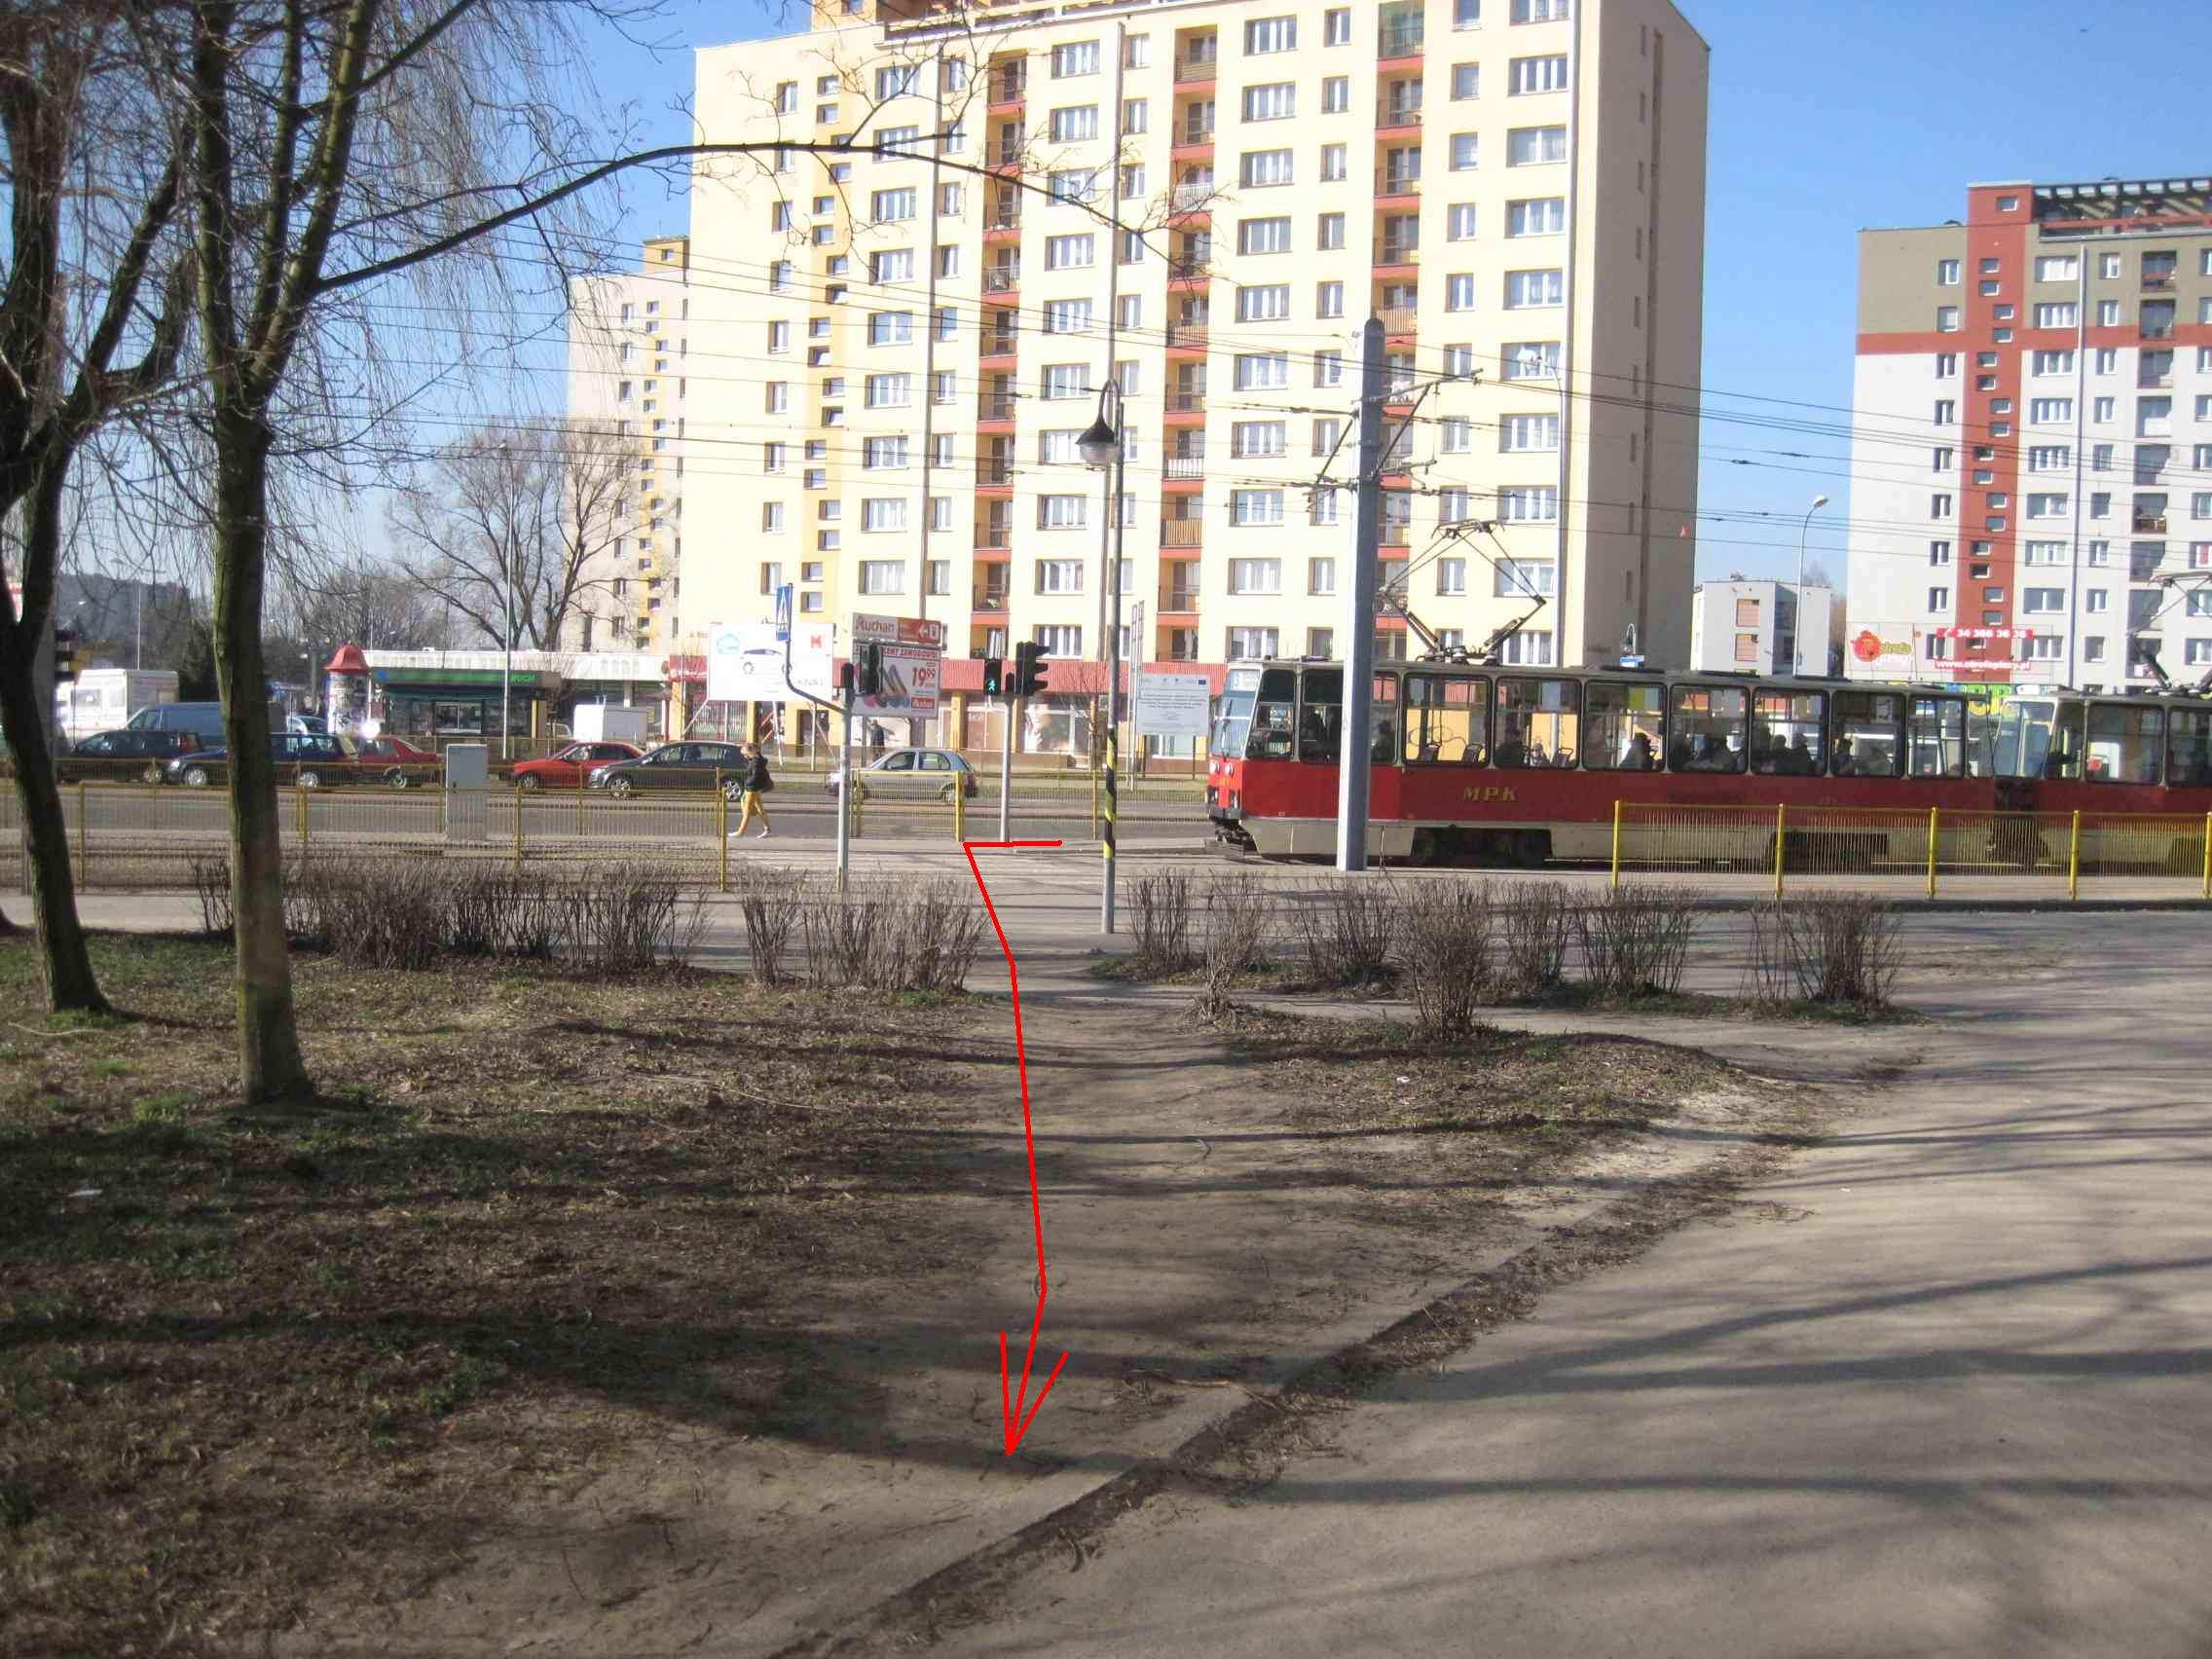 1. Po wyjściu z tramwaju naleŝy pójść w kierunku pawilonu (zgodnie z czerwoną strzałką). Na wprost przejścia przez tory zamiast chodnika wydeptana ścieŝka.